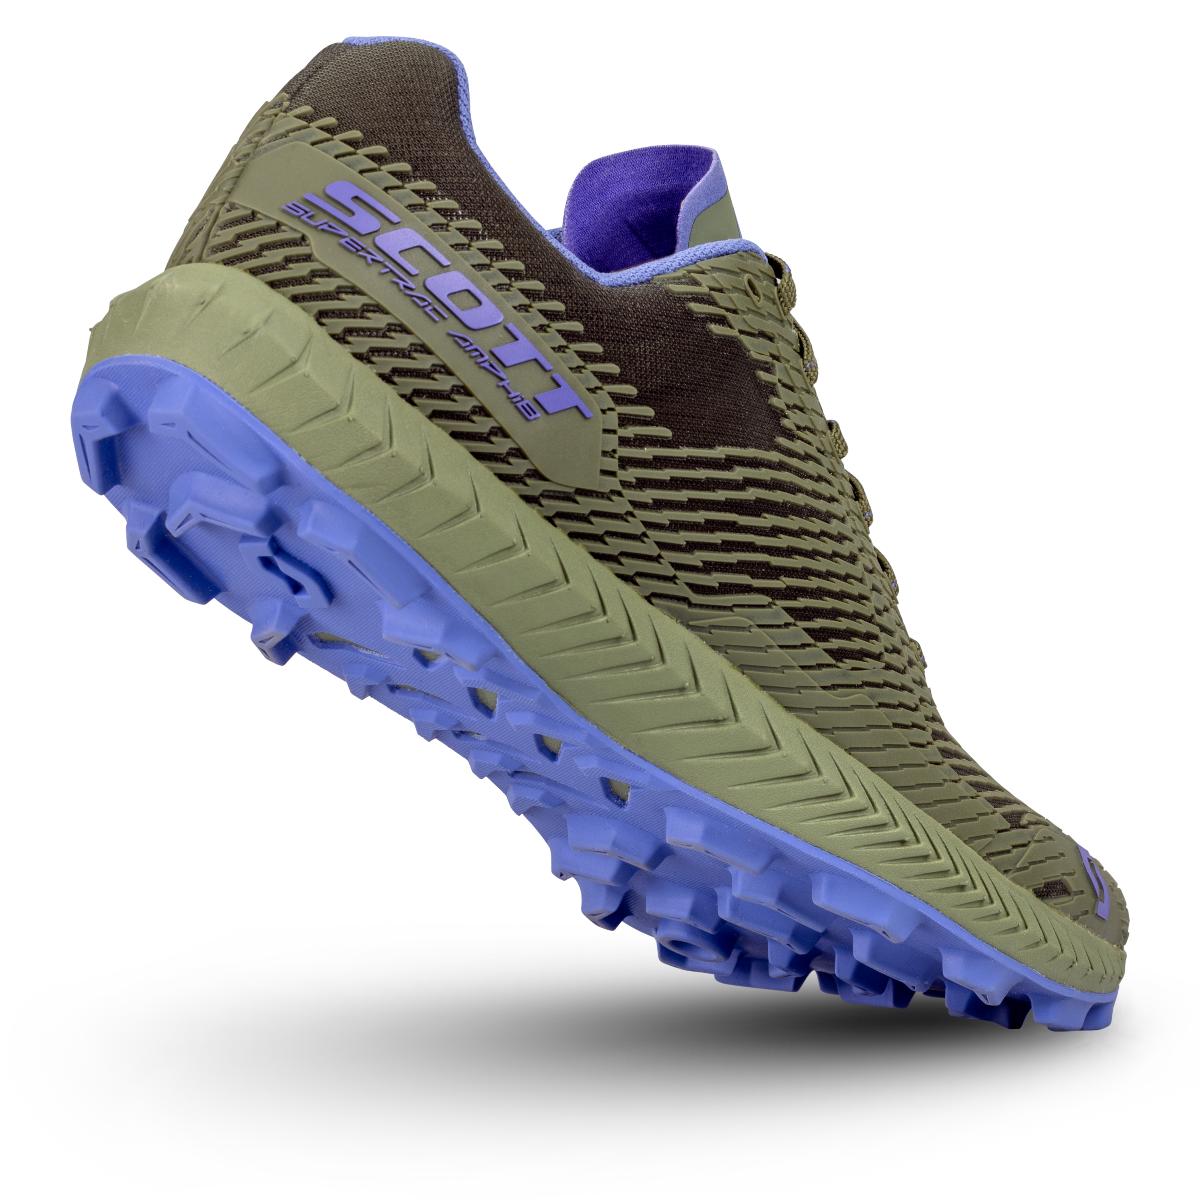 SCOTT Supertrac Amphib Shoe: la nuova scarpa multiuso